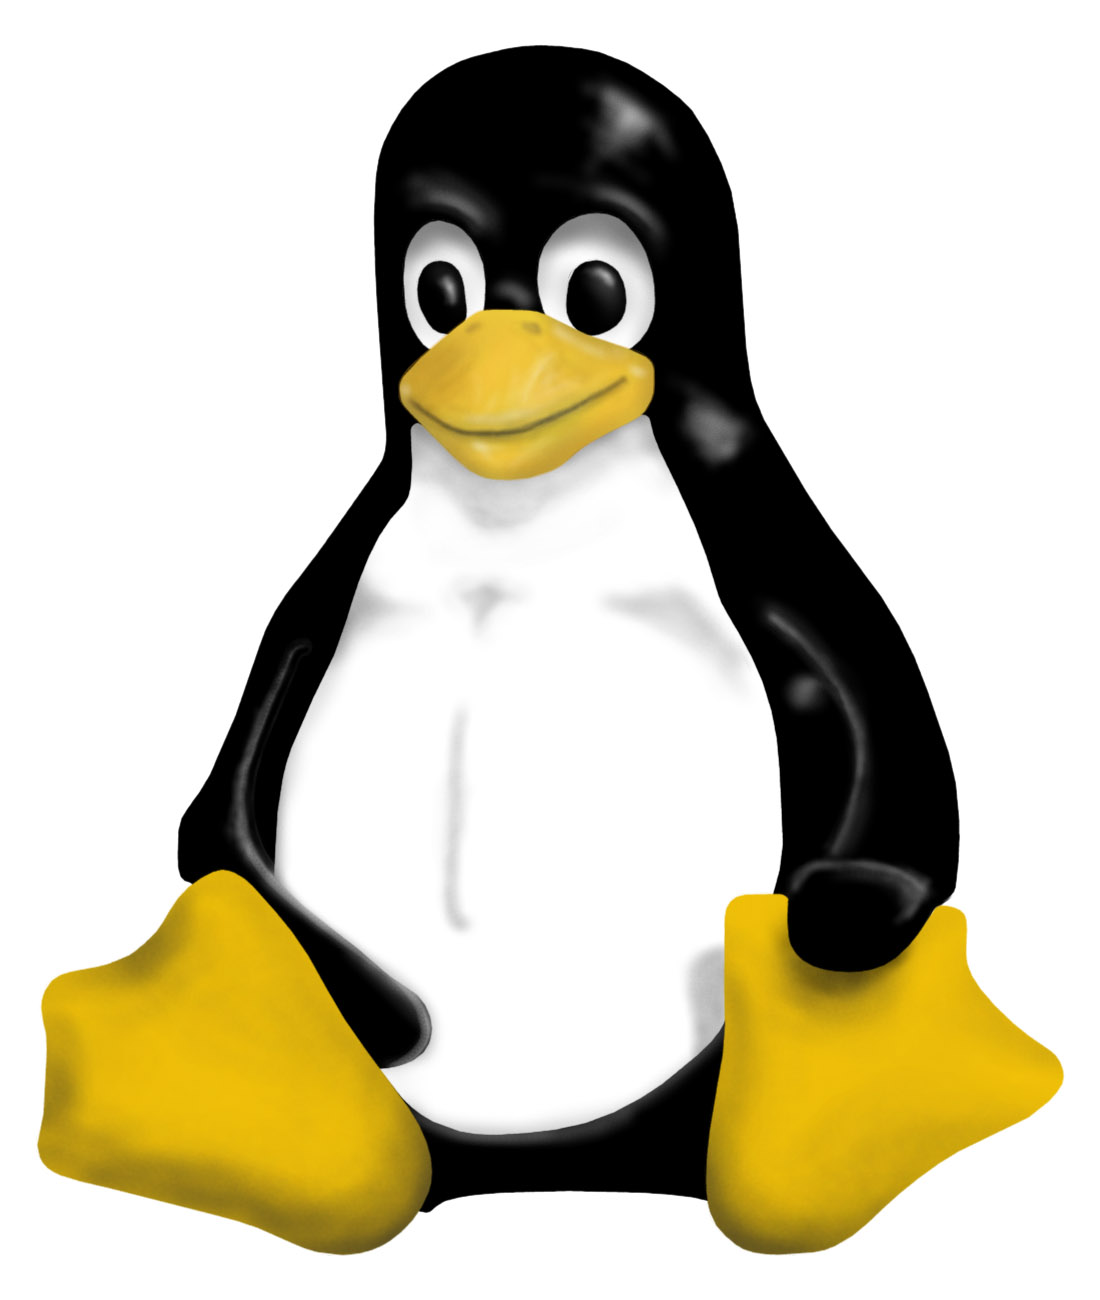 Funny Linux Penguin Linux Images 500x458 18kb 500x458 18kb